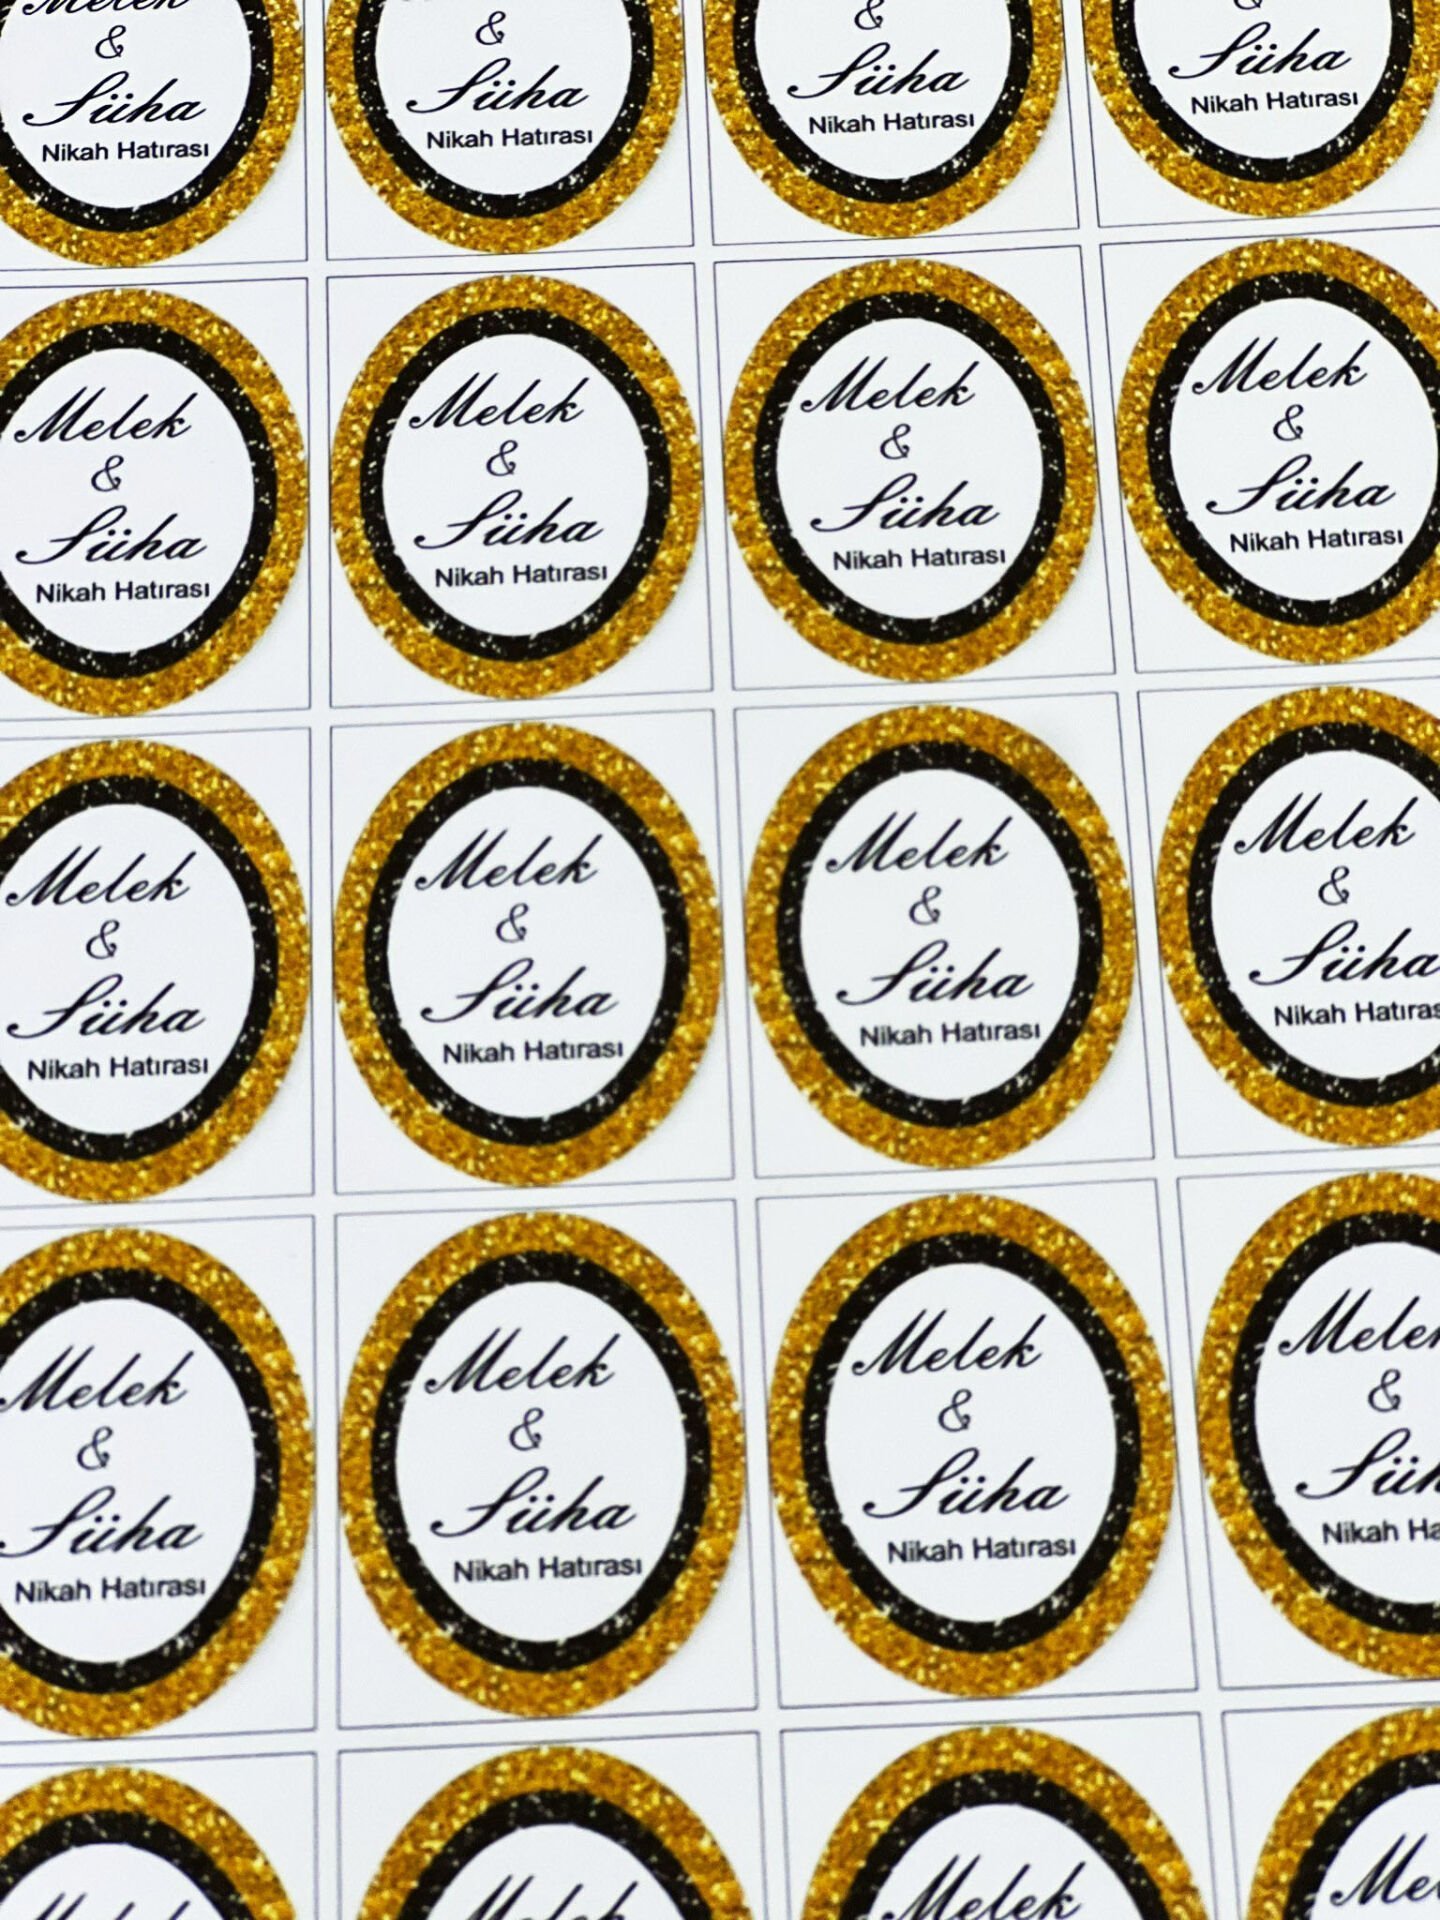 Yapışkanlı İsim Etiketi 3,5 x 4.5 cm Gold Siyah 30 Adet  Kına - Söz - Nişan - Nikah - Bebek Etiketi